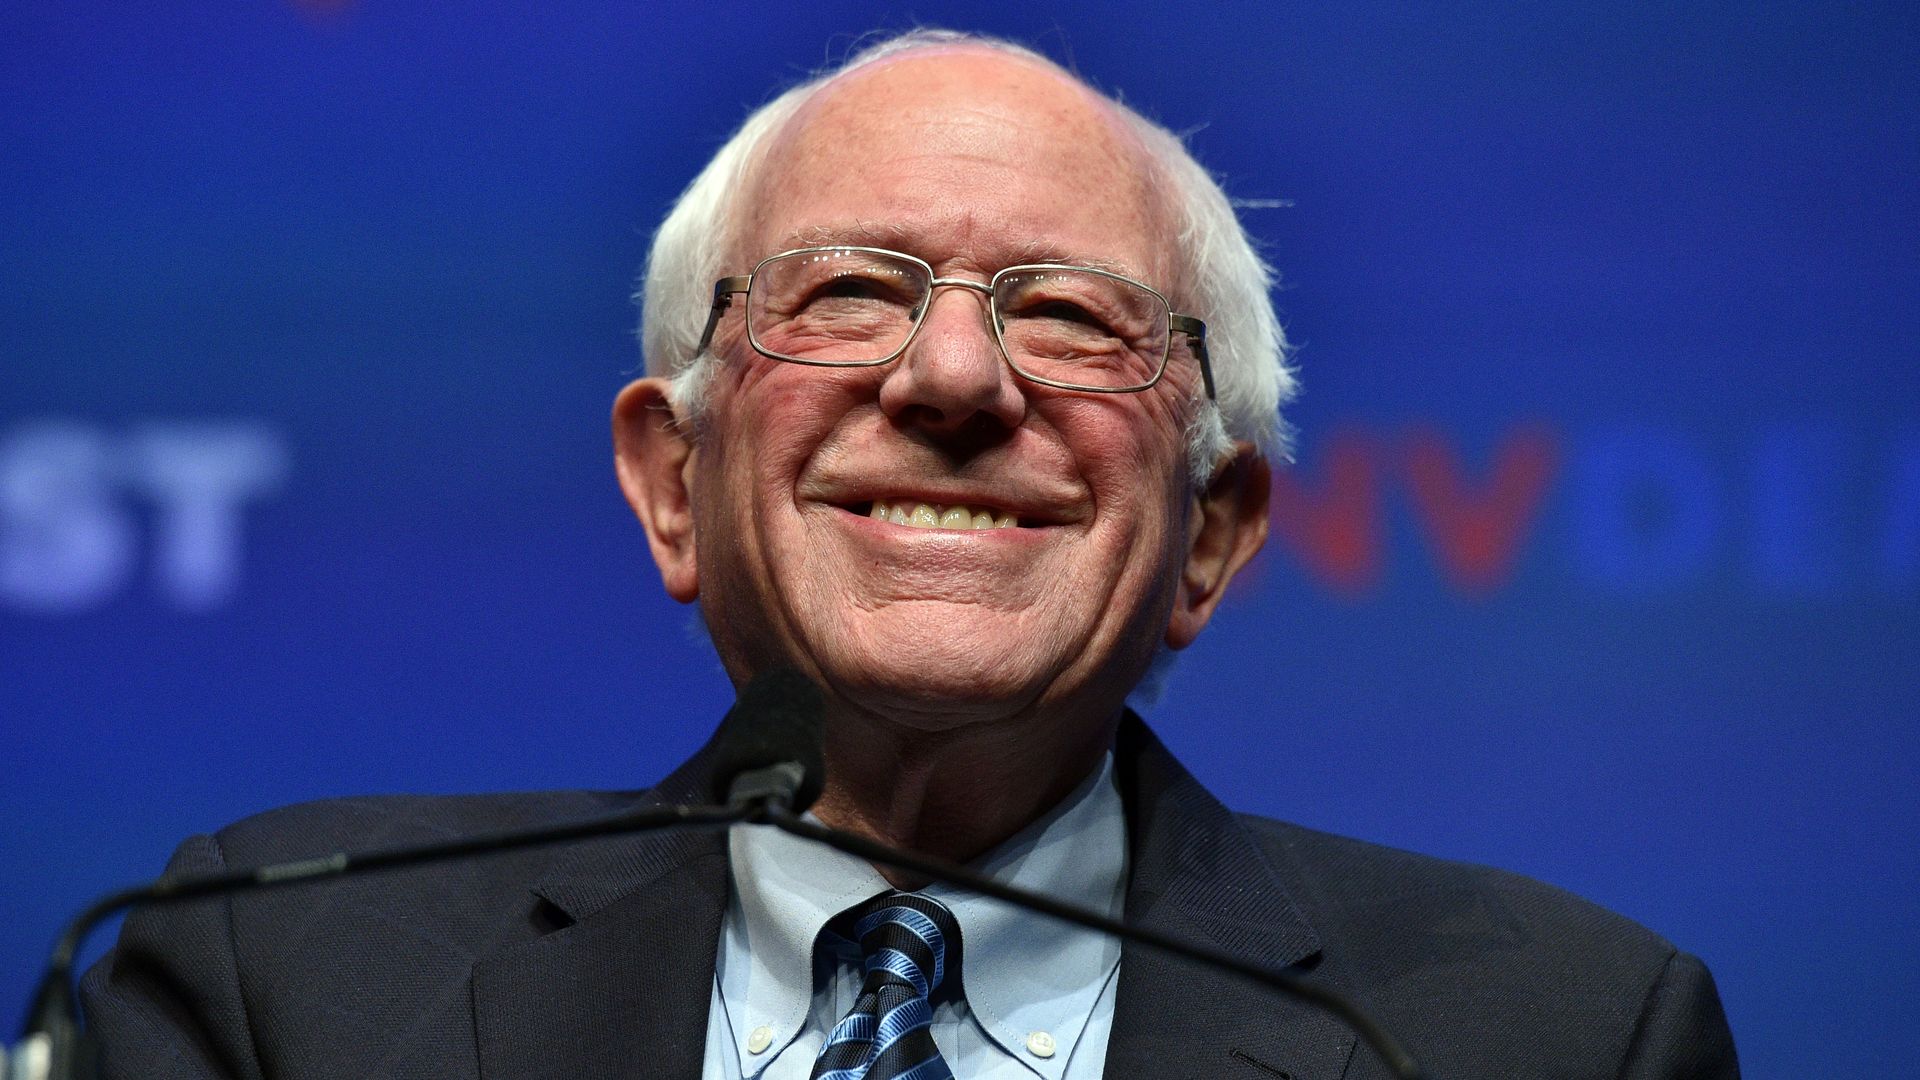 Bernie Sanders smiling